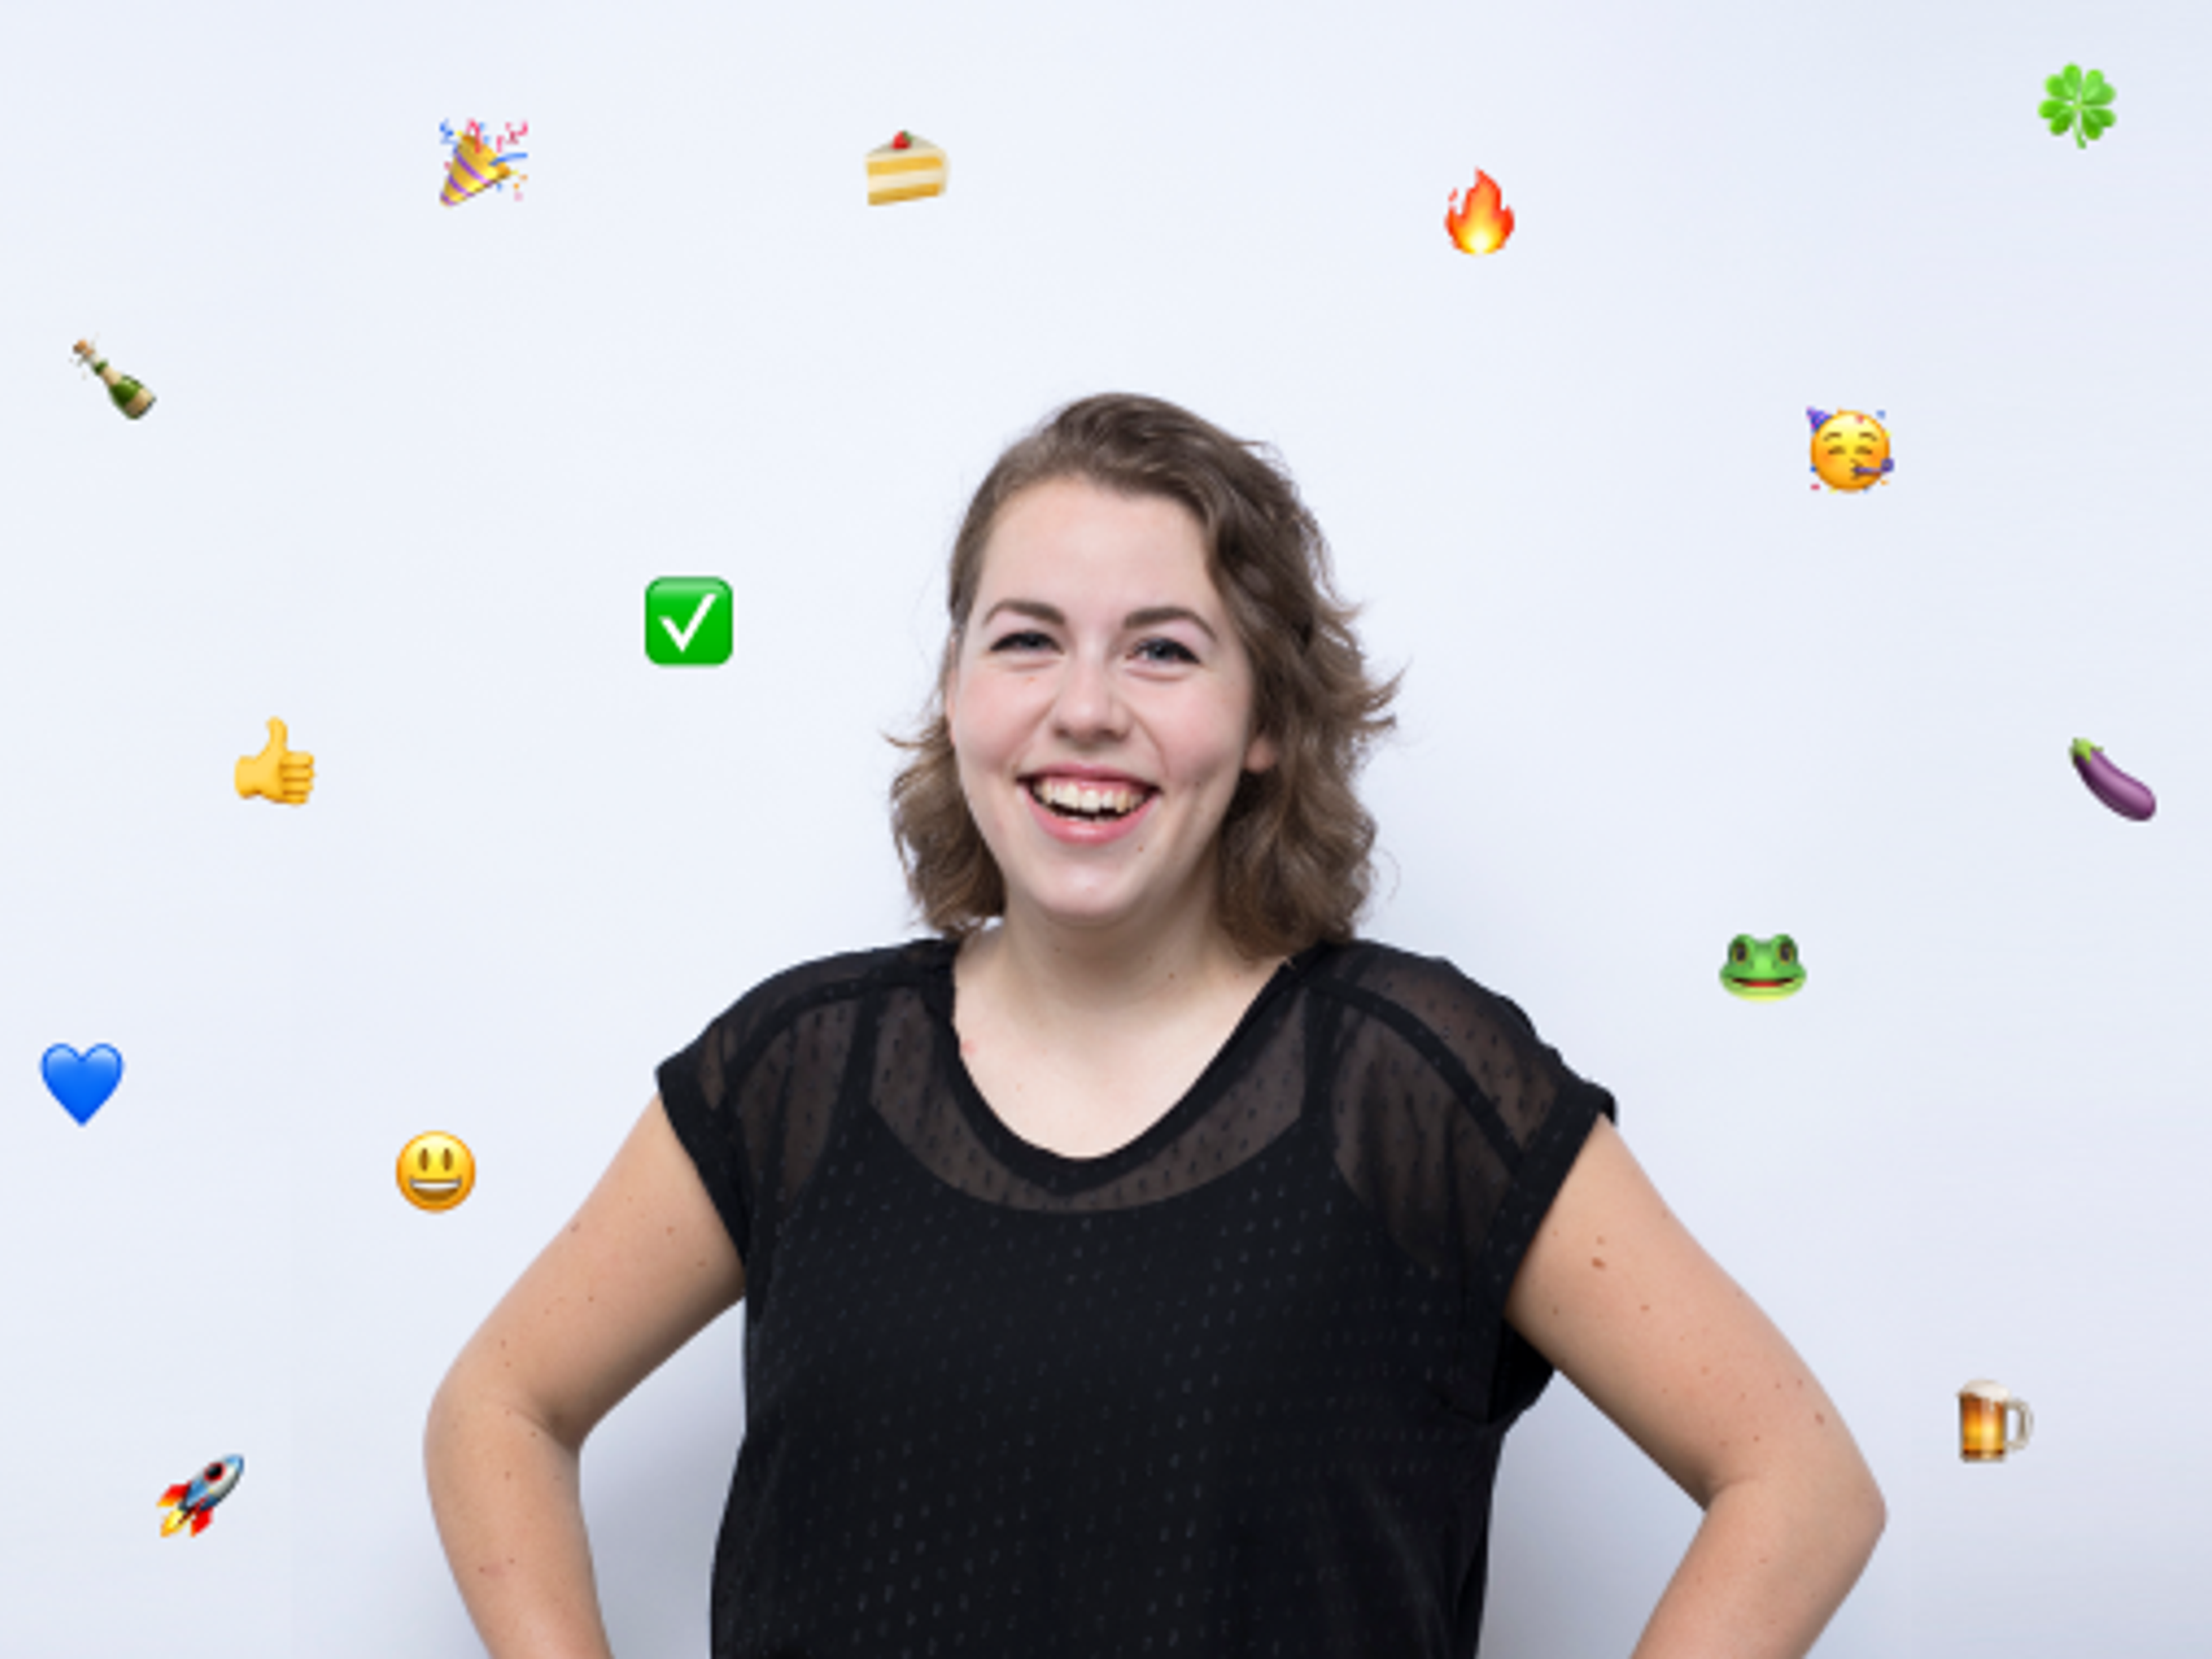  Schieten woorden tekort? Gebruik emoji's!